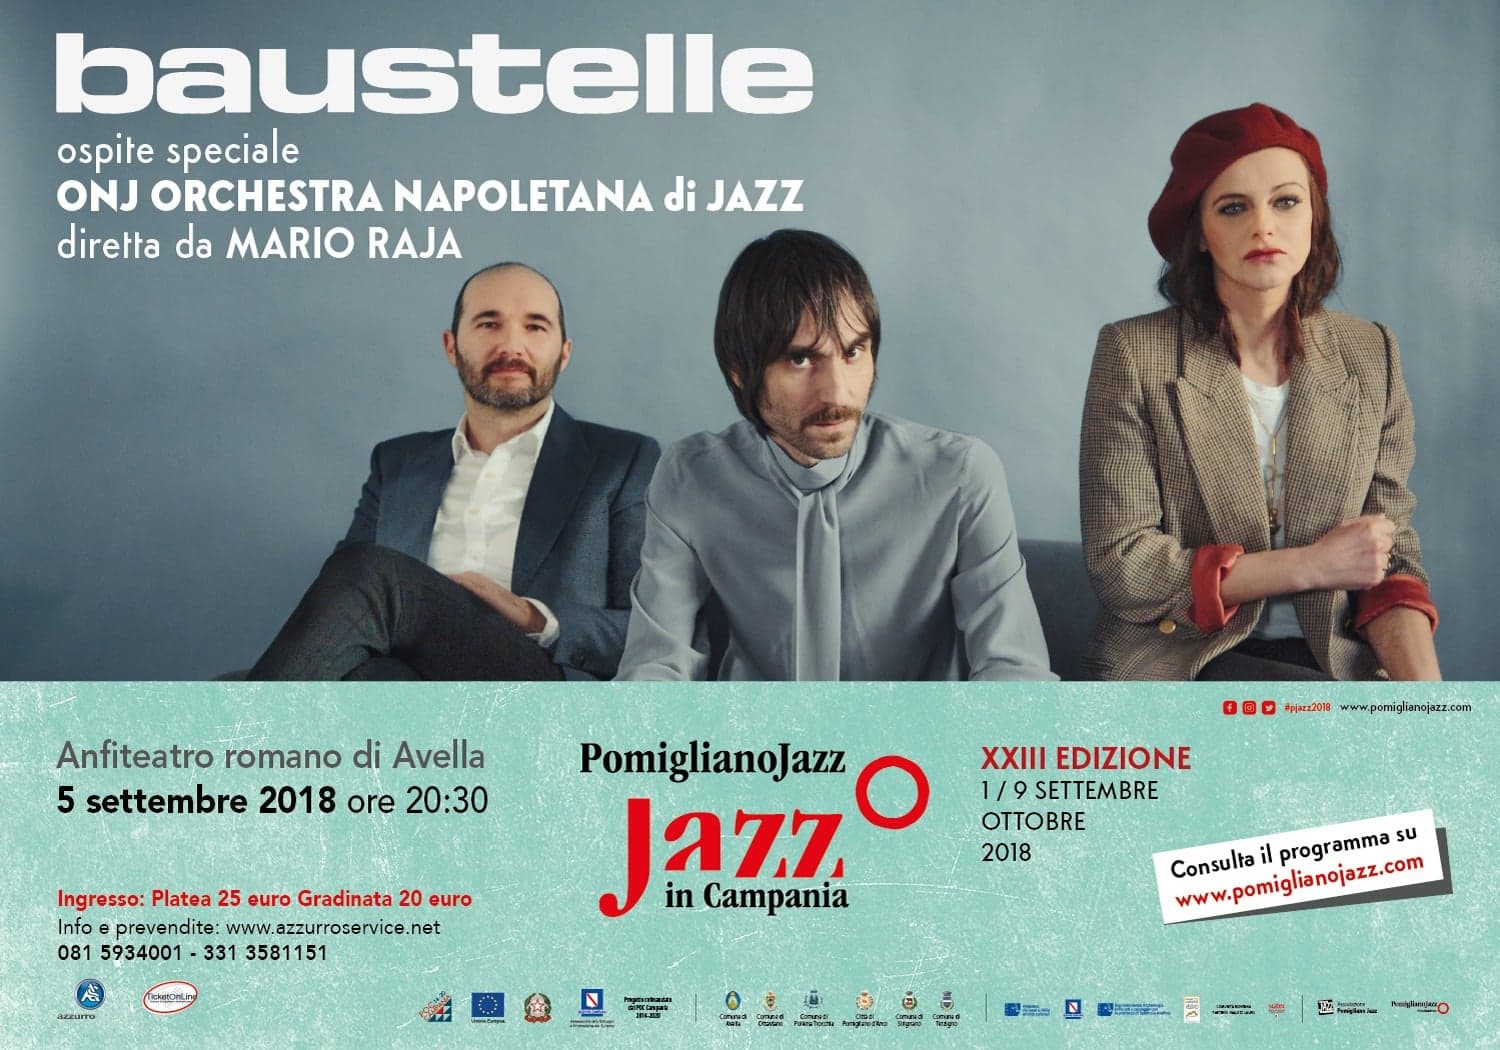 Baustelle in concerto con l’Orchestra Napoletana di Jazz. Il 5 settembre ad Avella per Pomigliano Jazz in Campania